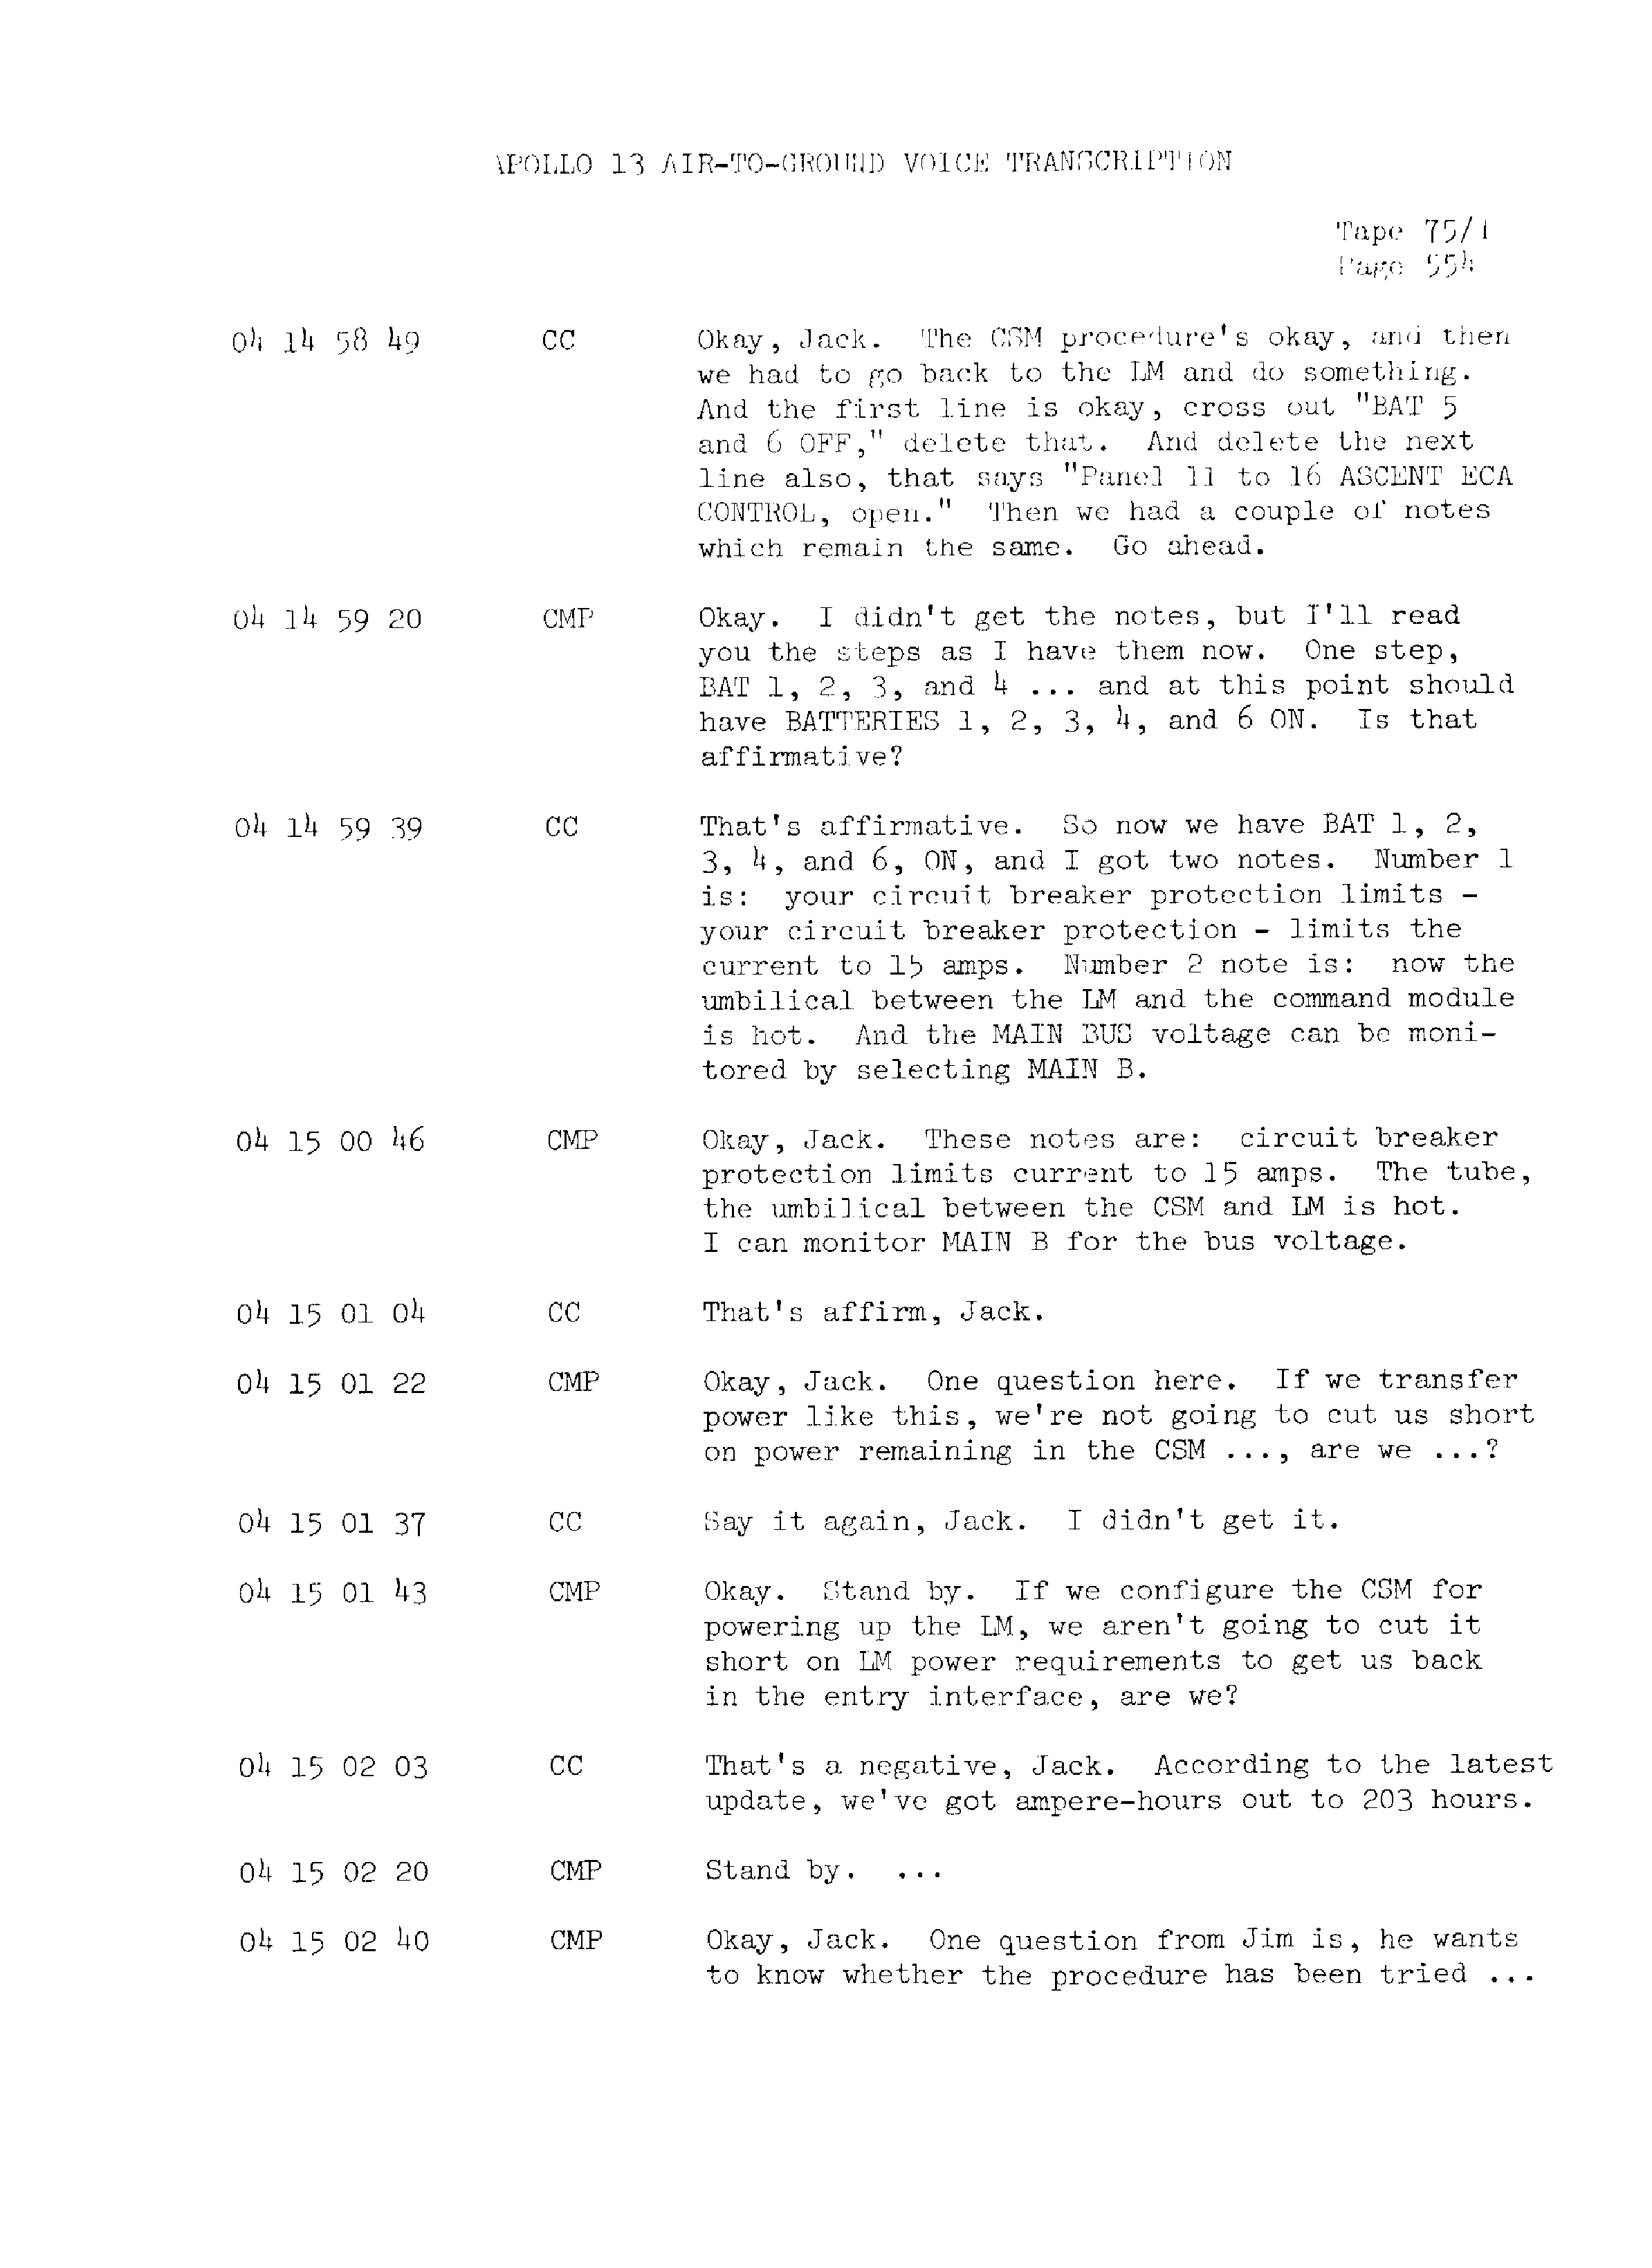 Page 561 of Apollo 13’s original transcript